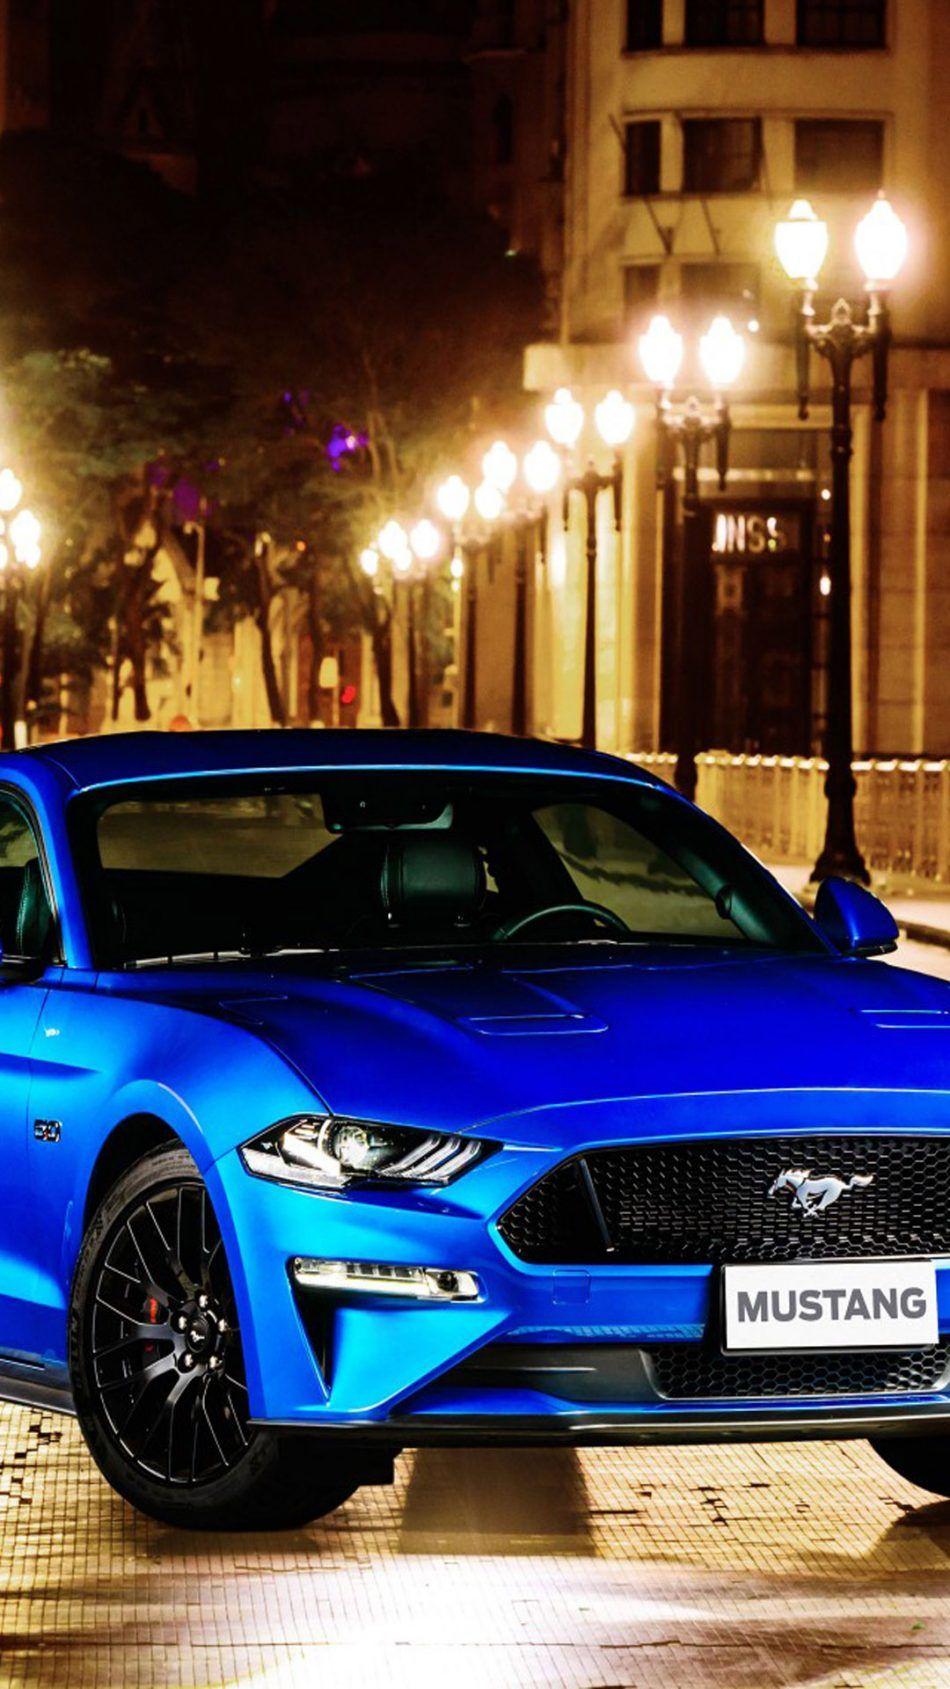 Black Mustang Car Wallpaper Download